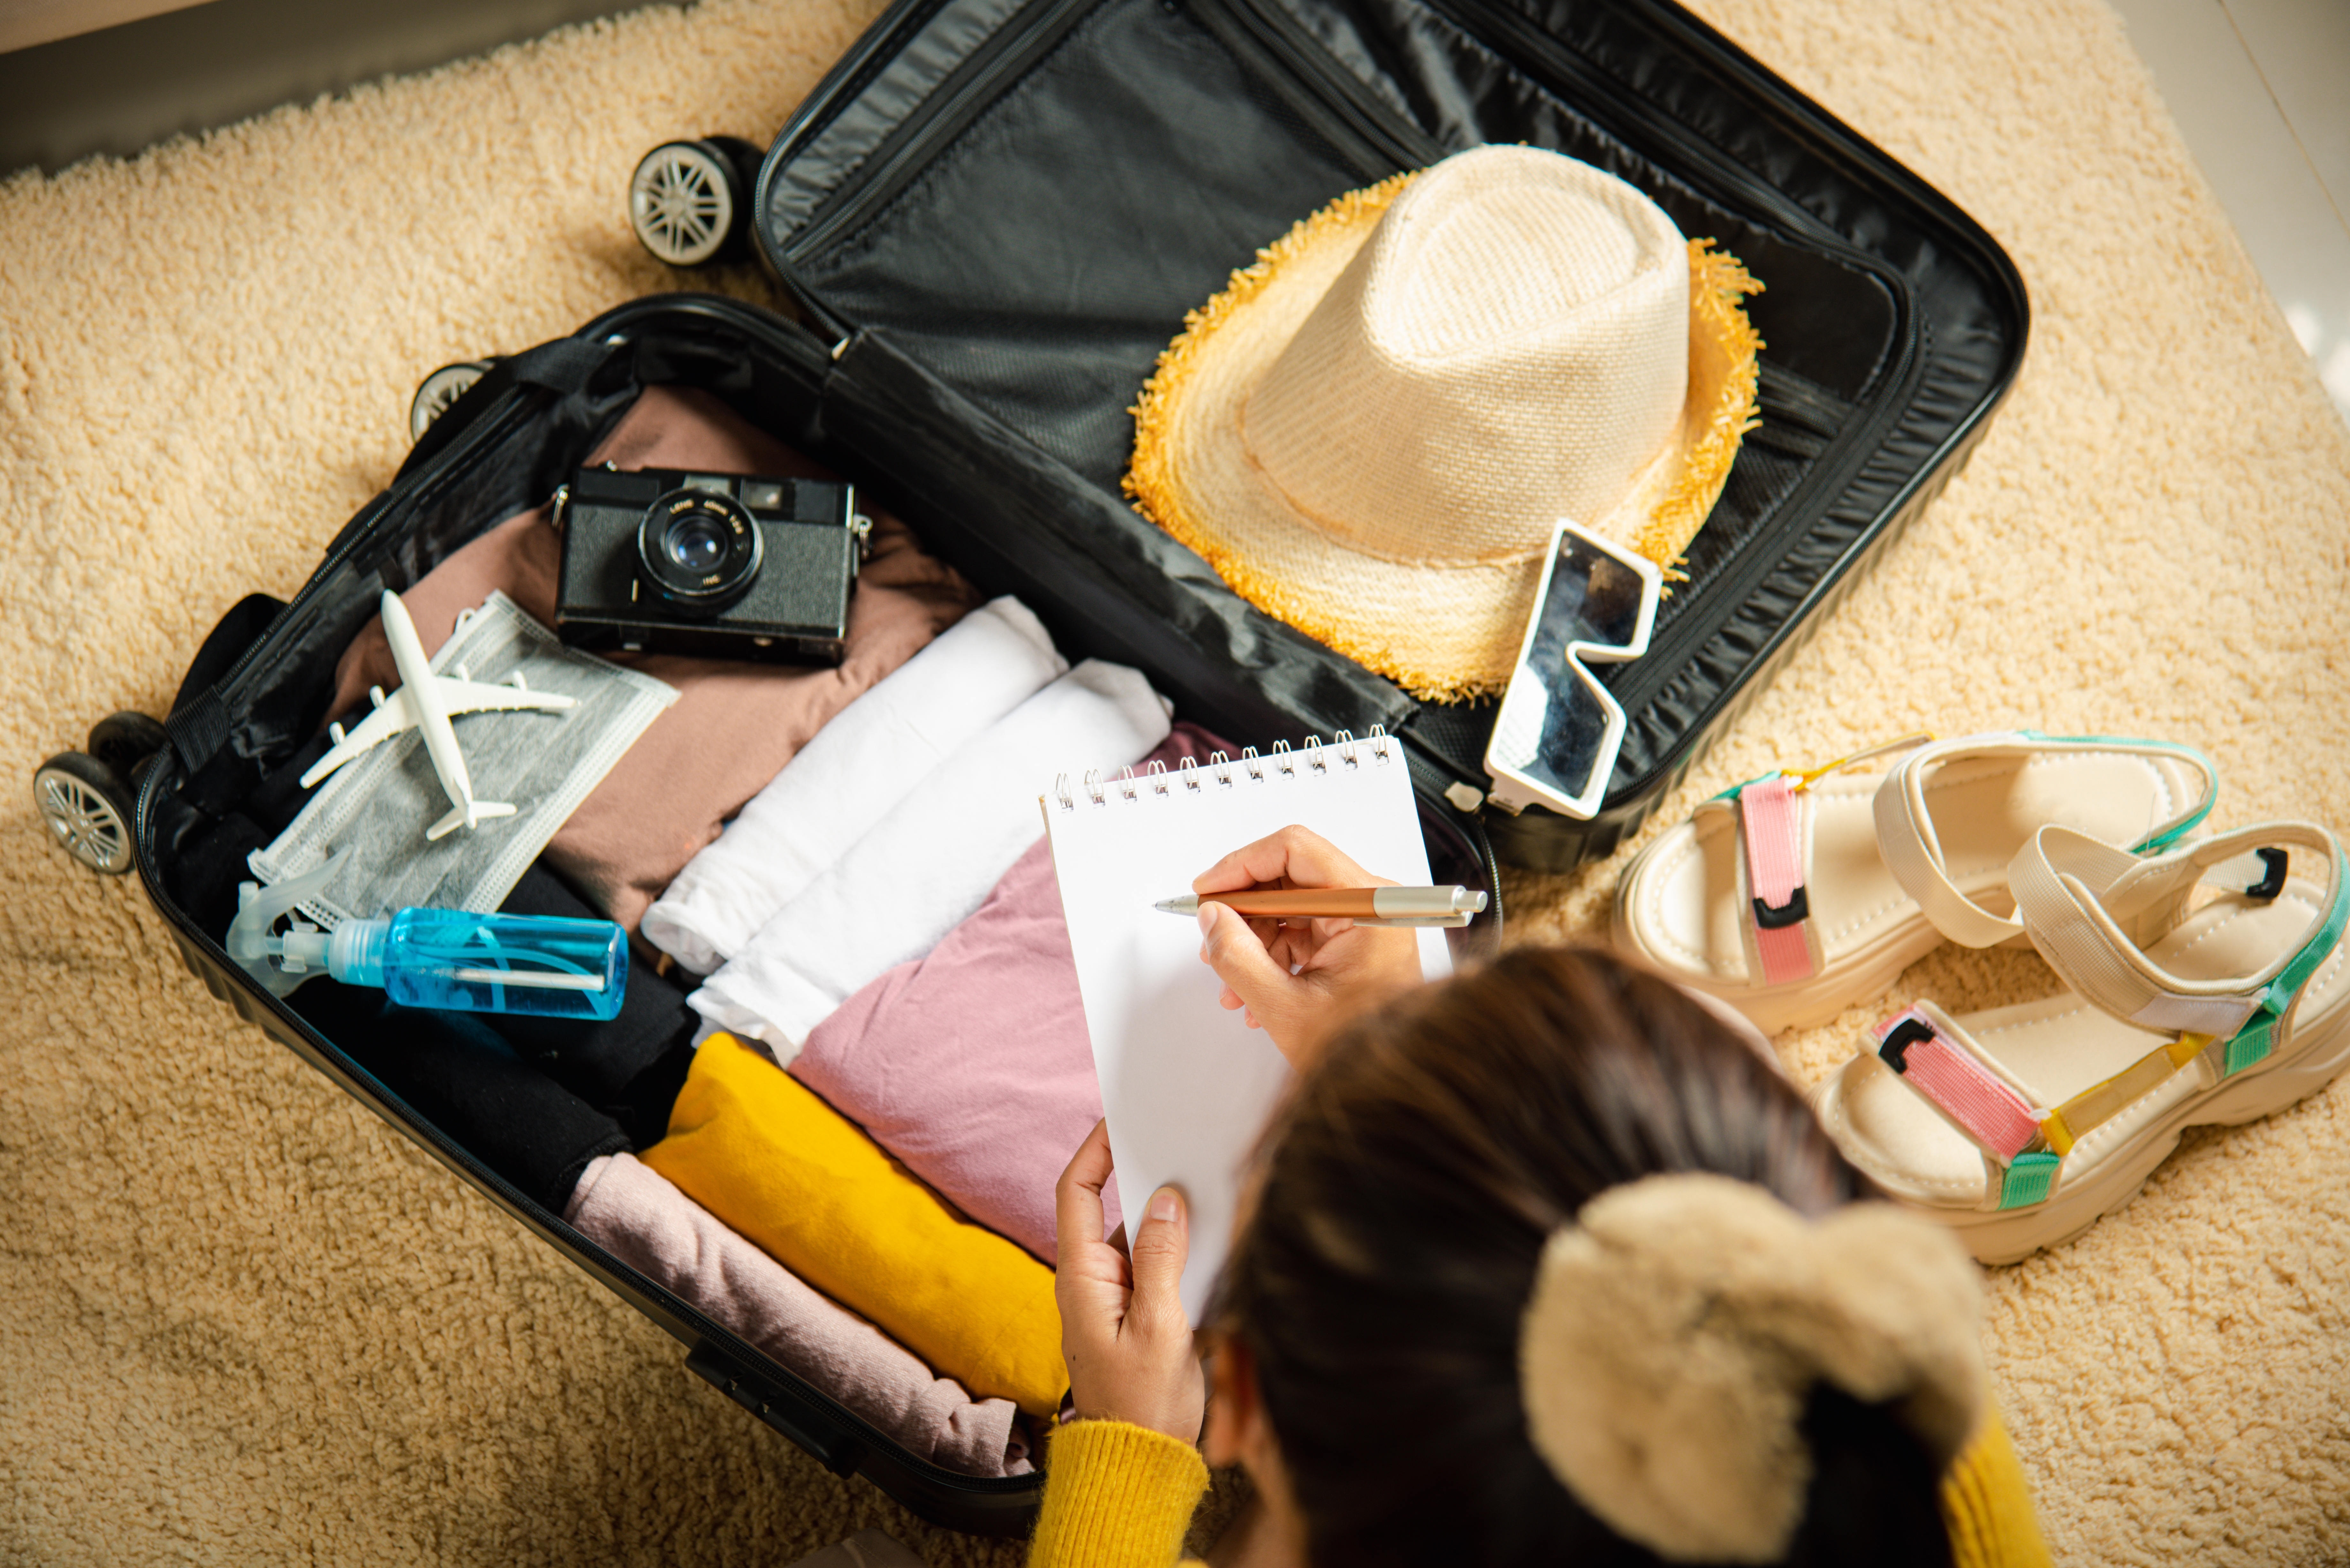 Une femme prépare une valise tout en écrivant une note | Source : Shutterstock